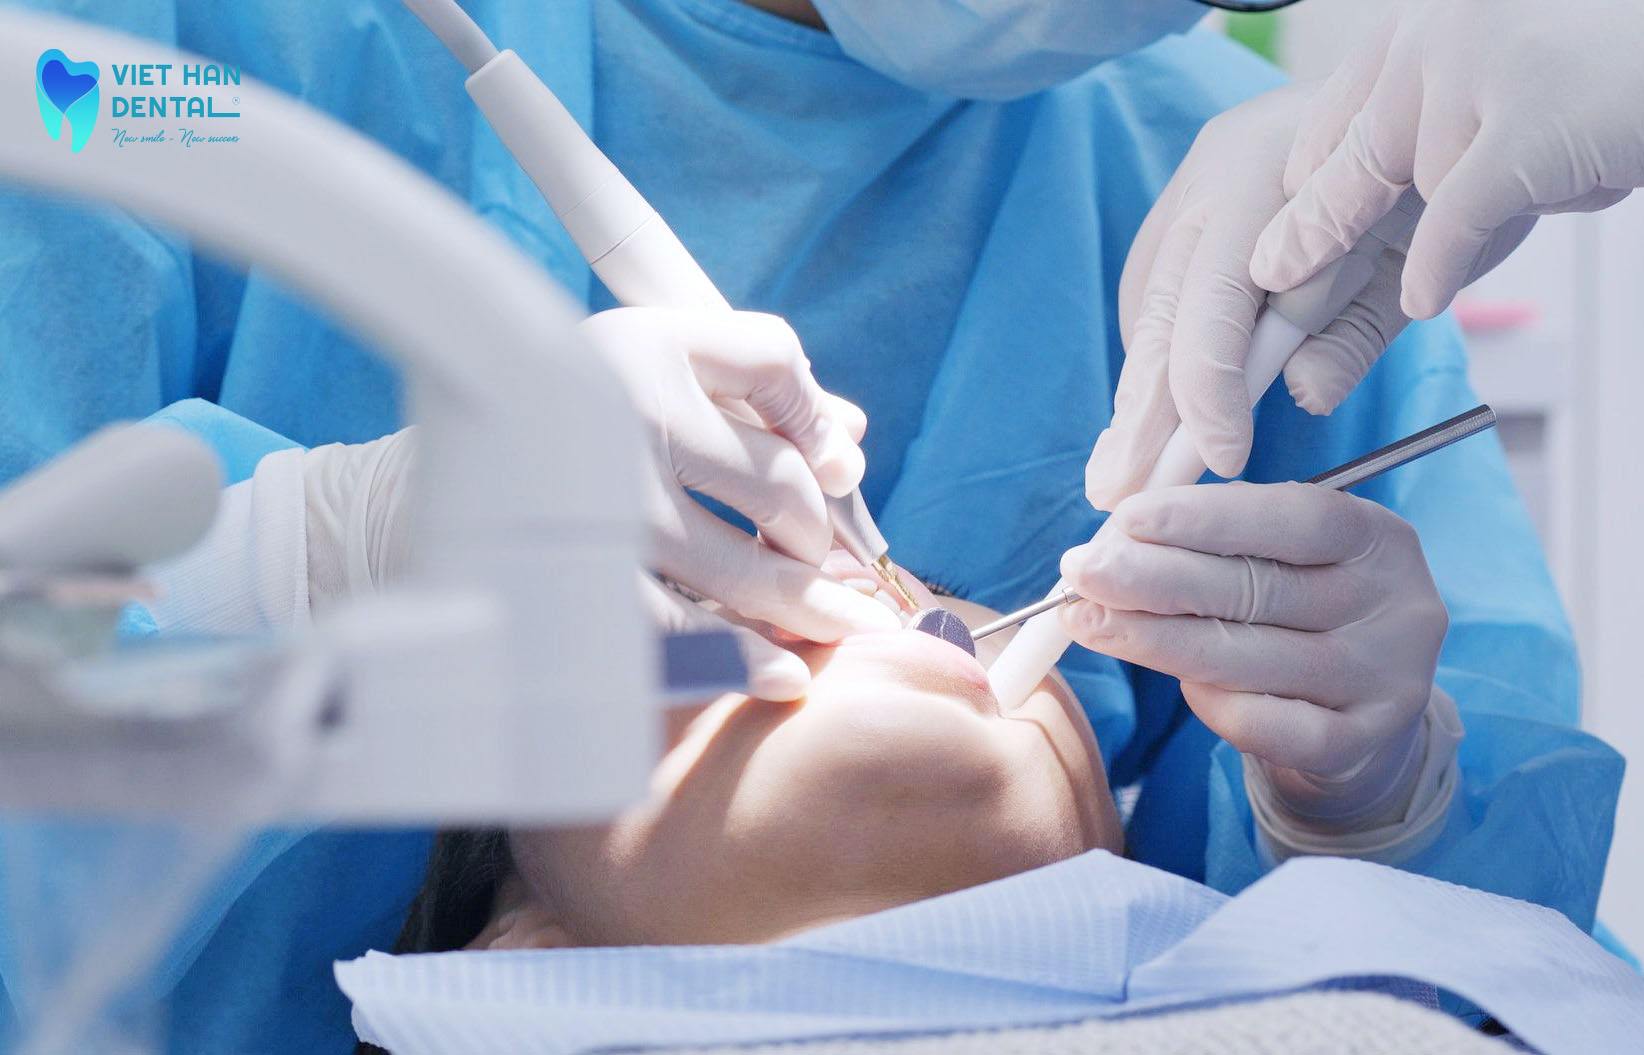 bác sĩ của nha khoa Việt Hàn đang thực trồng răng Implant 